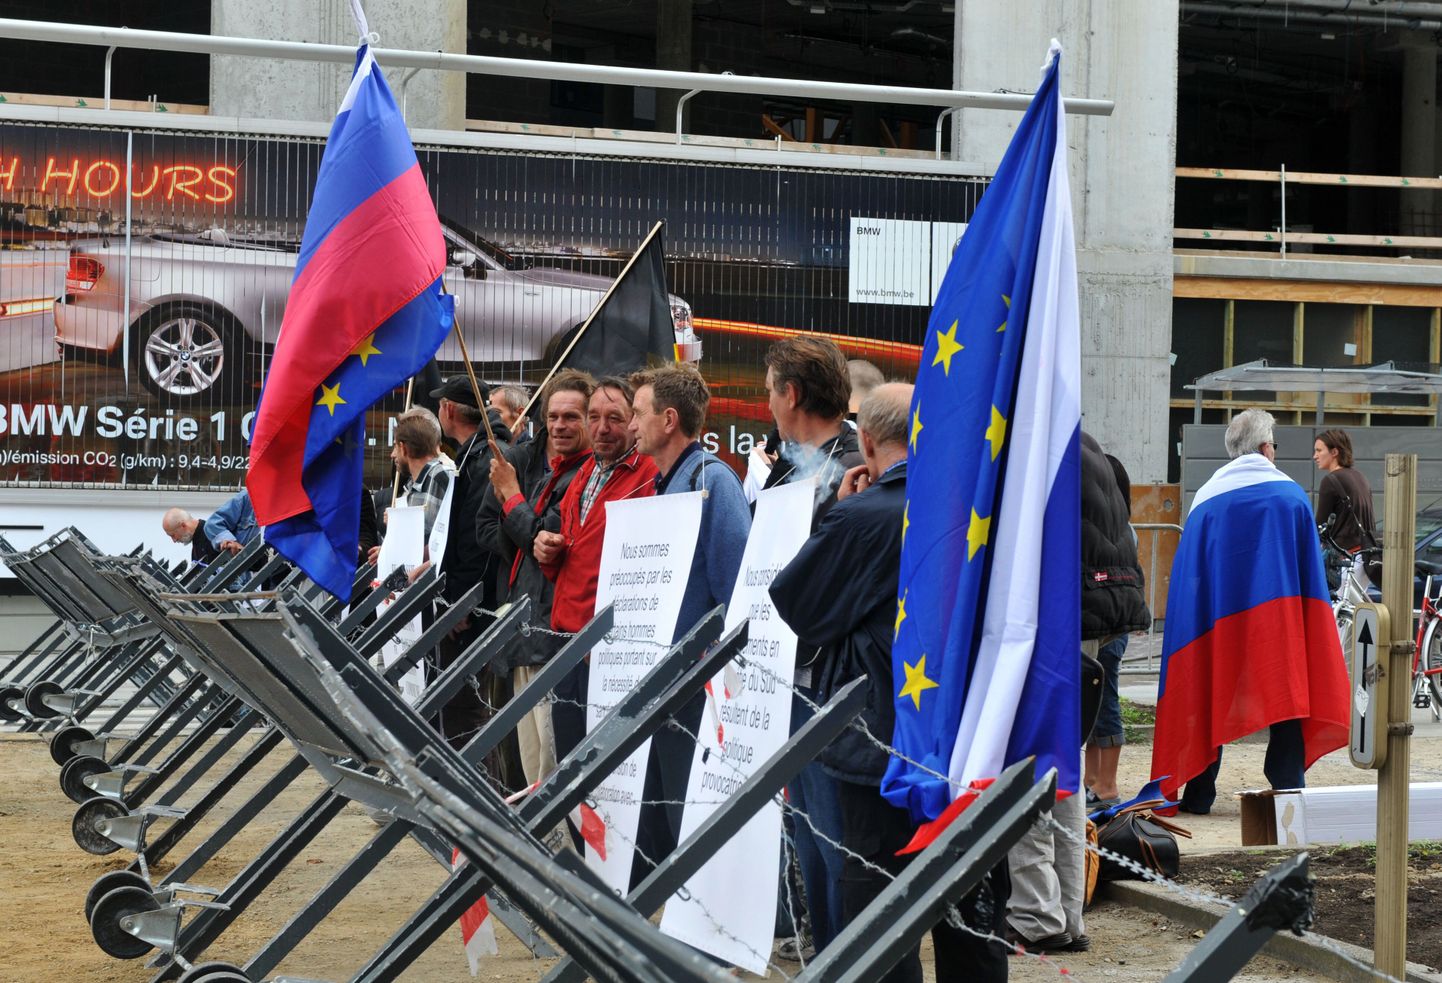 Vene demonstrandid Euroopa Liidu ja Venemaa lippudega eile Brüsselis ELi peahoone lähistel.